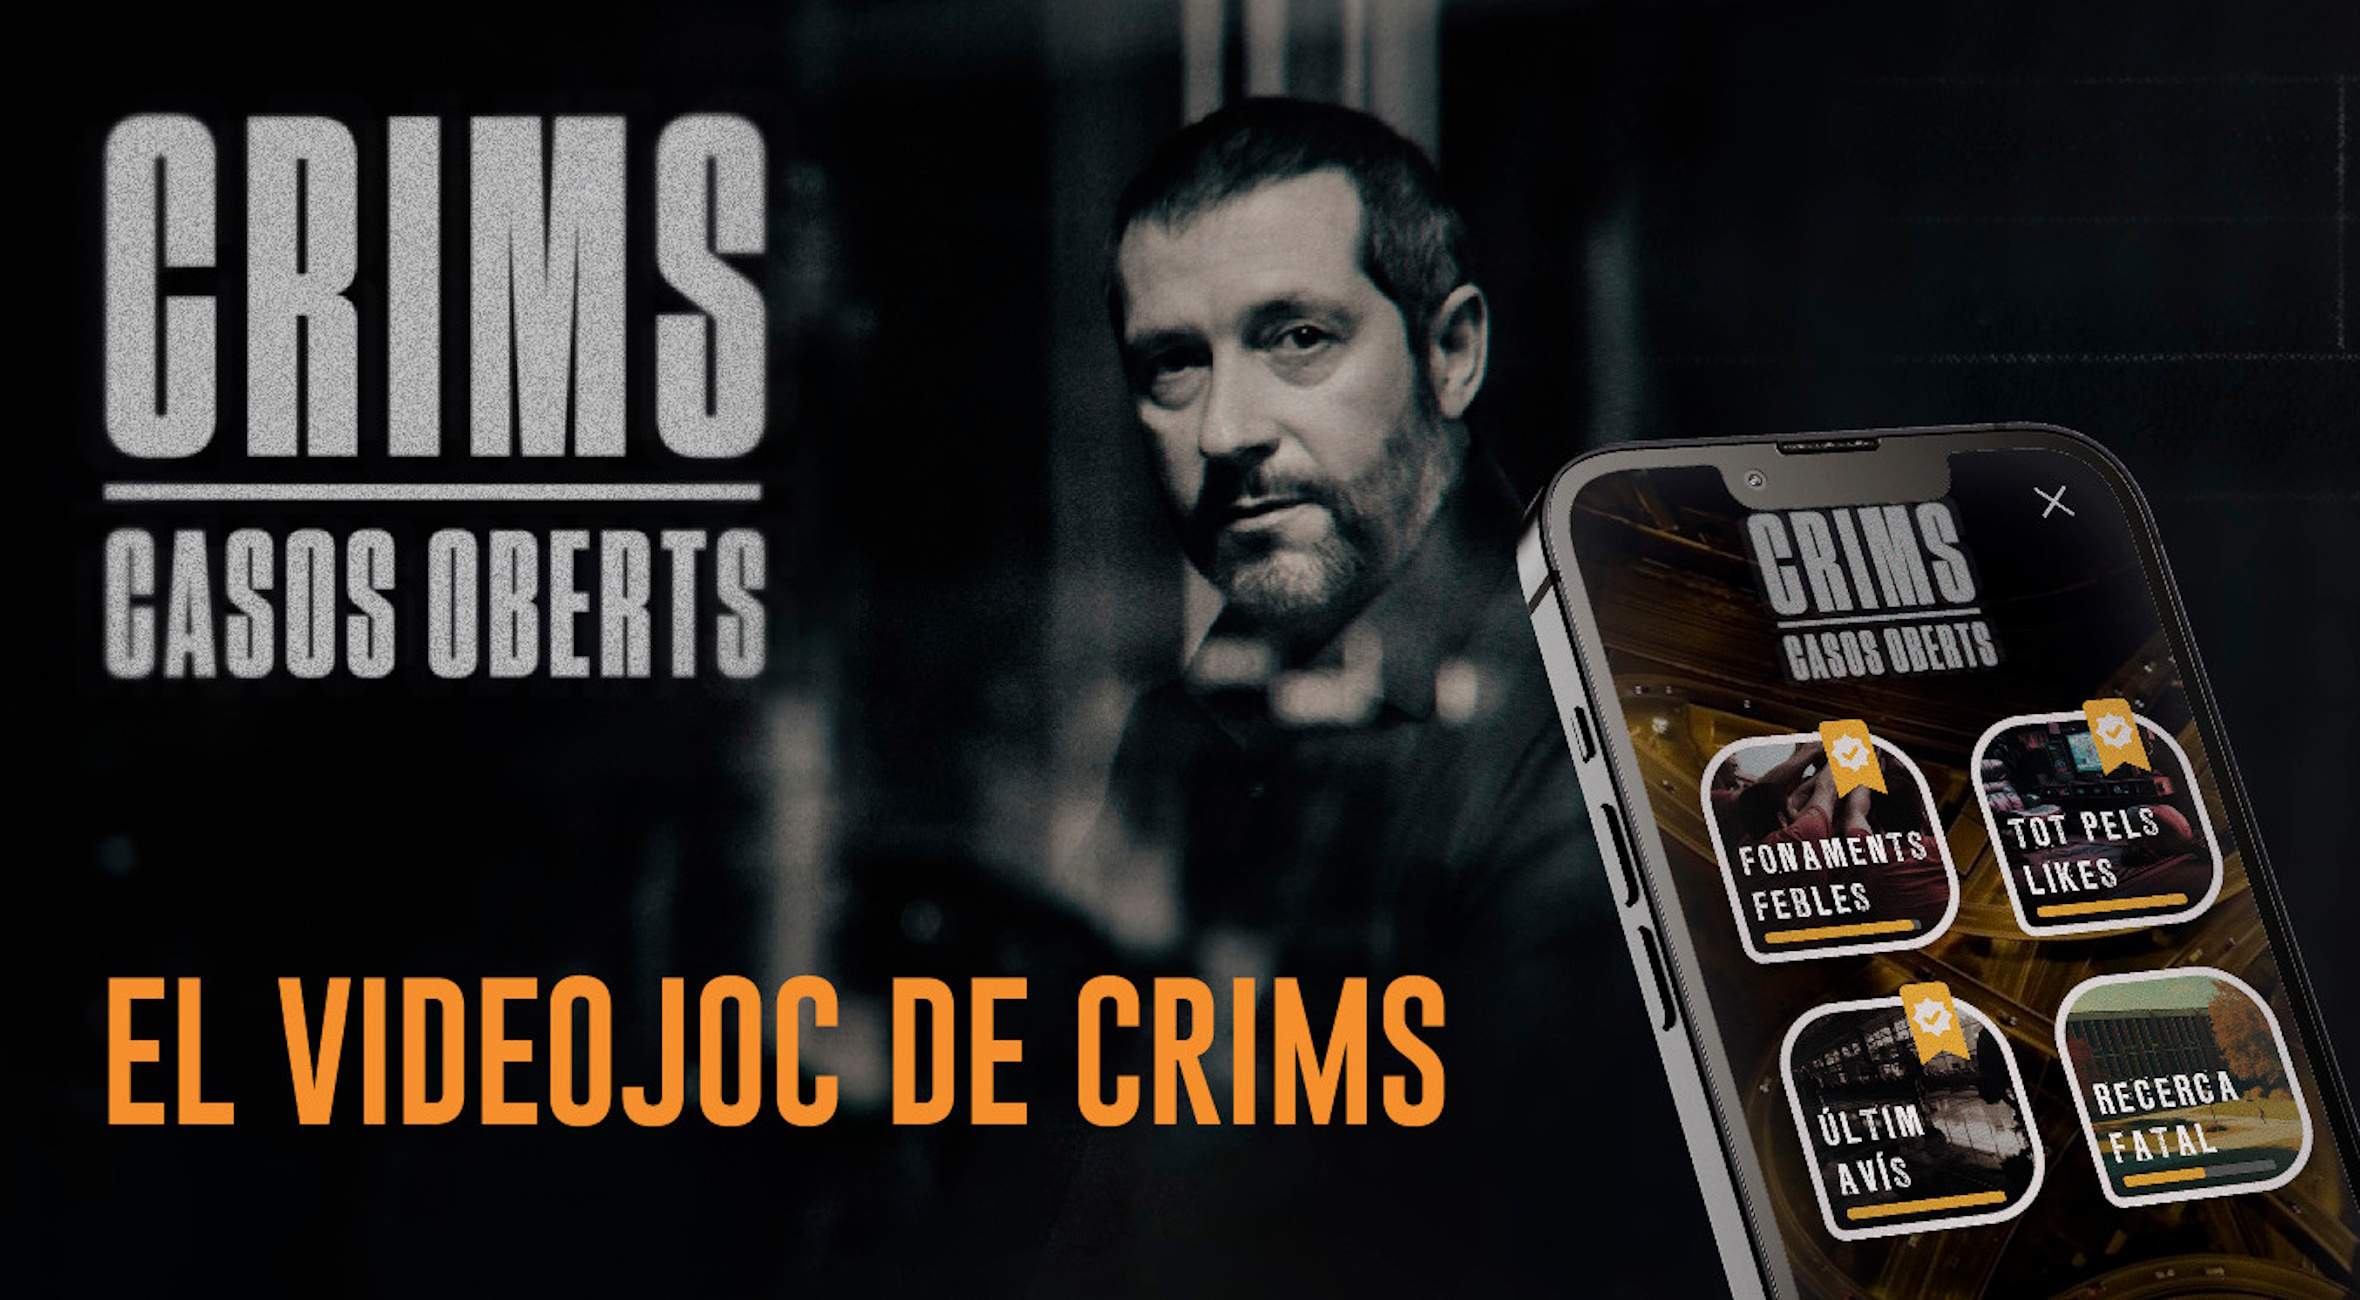 El videojoc de 'Crims' s'estrena a 3Cat amb una desena de casos ficticis per resoldre